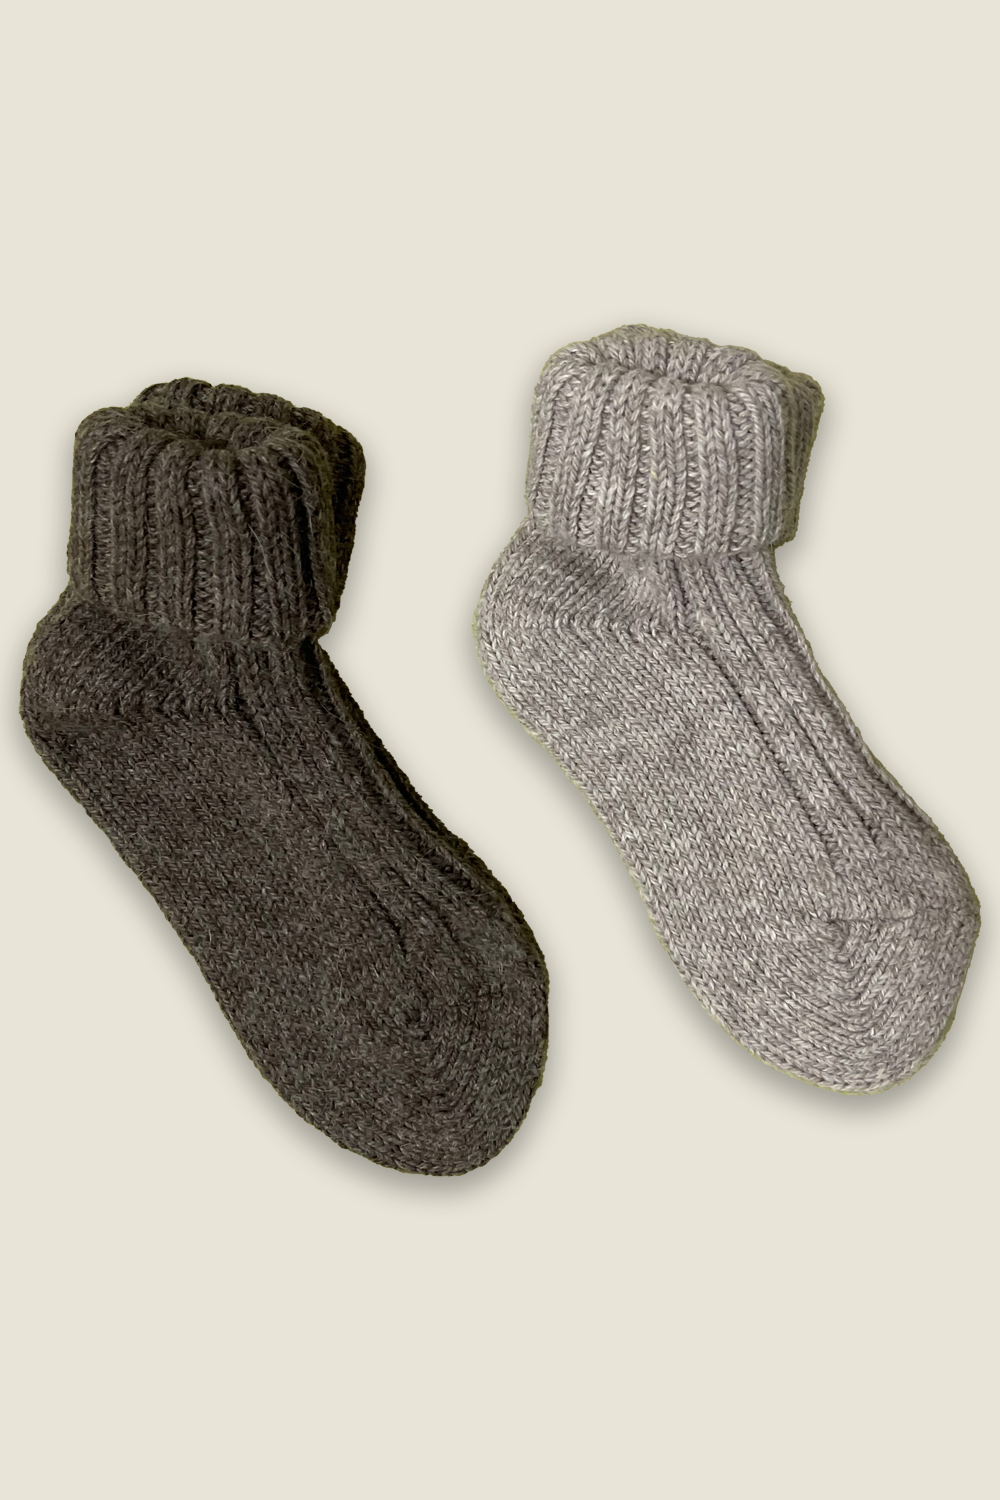 Calzini di alpaca - grigio e marrone - 2 paia